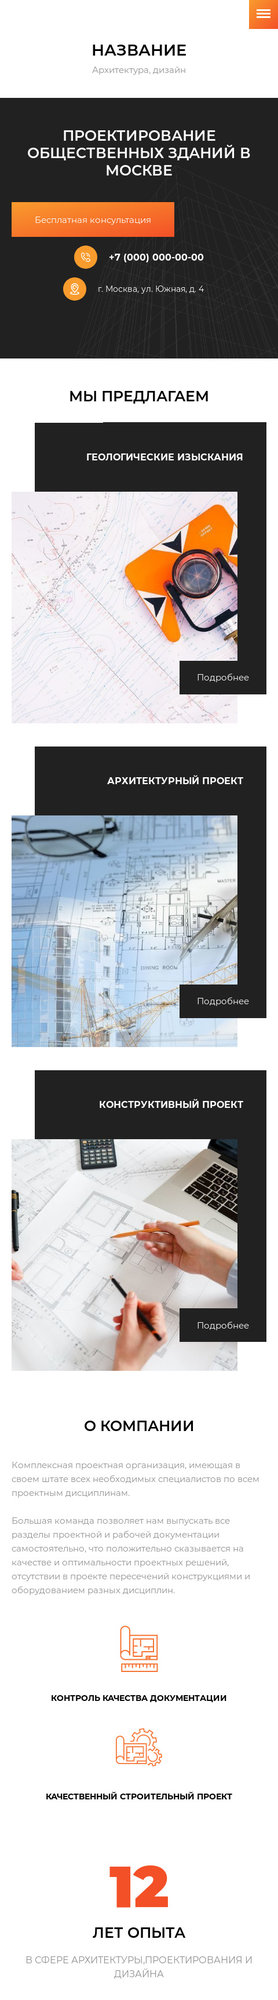 Готовый Сайт-Бизнес № 2306870 - Архитектура, дизайн, проектирование (Мобильная версия)